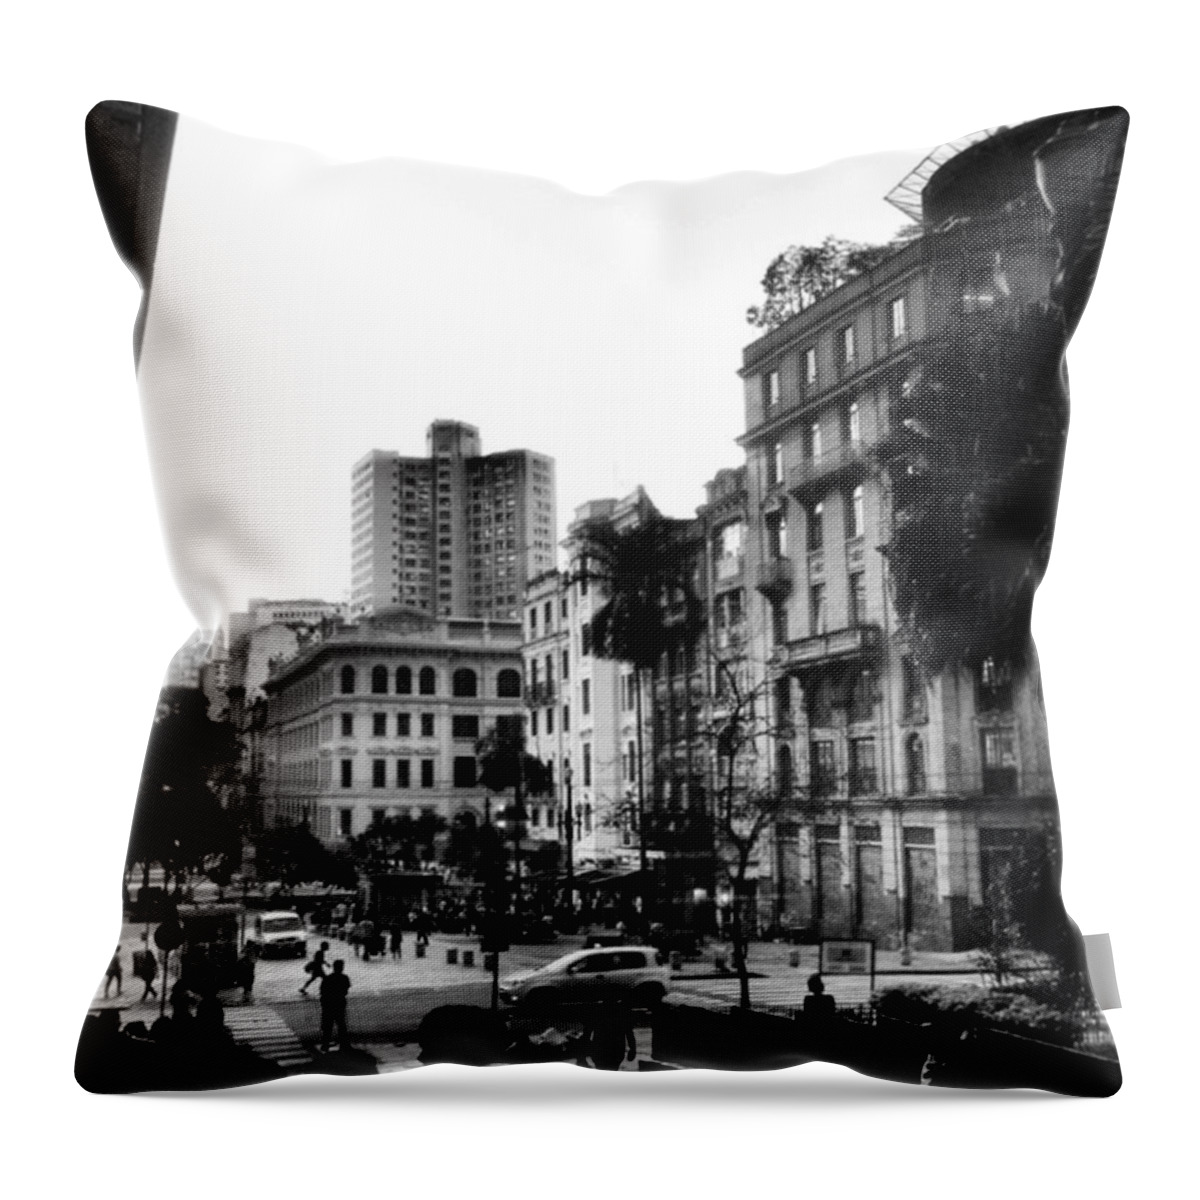 Anhangabau Throw Pillow featuring the photograph Sao Paulo Downtown #pracaantonioprado by Carlos Alkmin